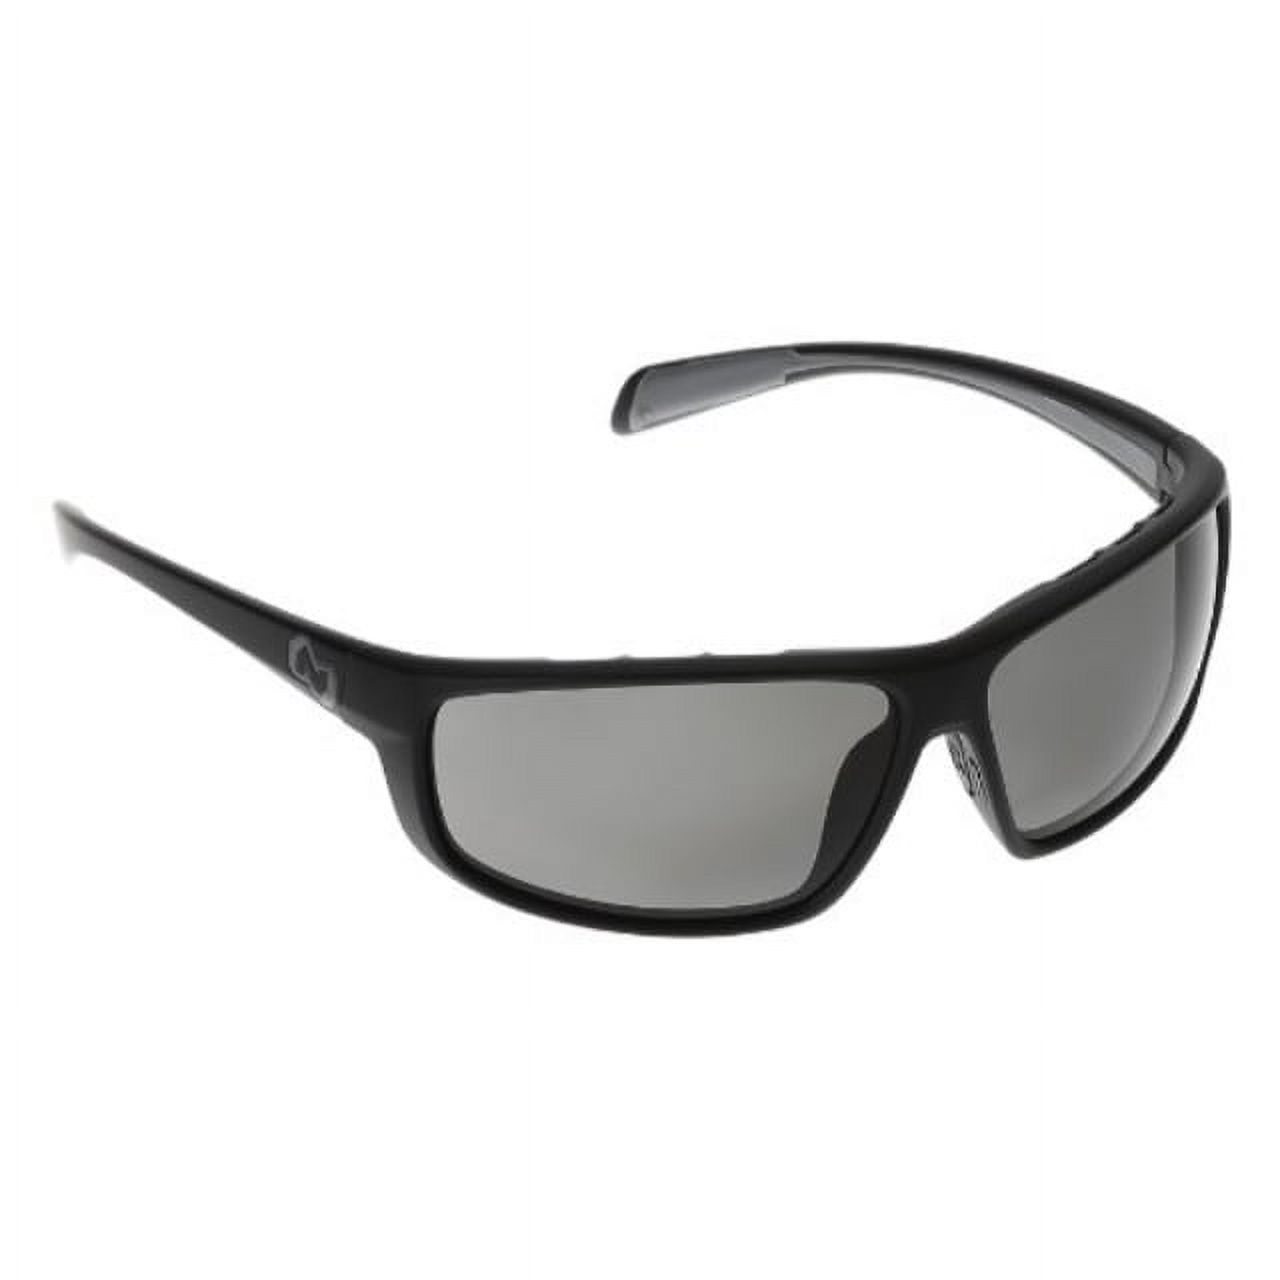 Bigfork Polarized Sunglasses - image 1 of 2